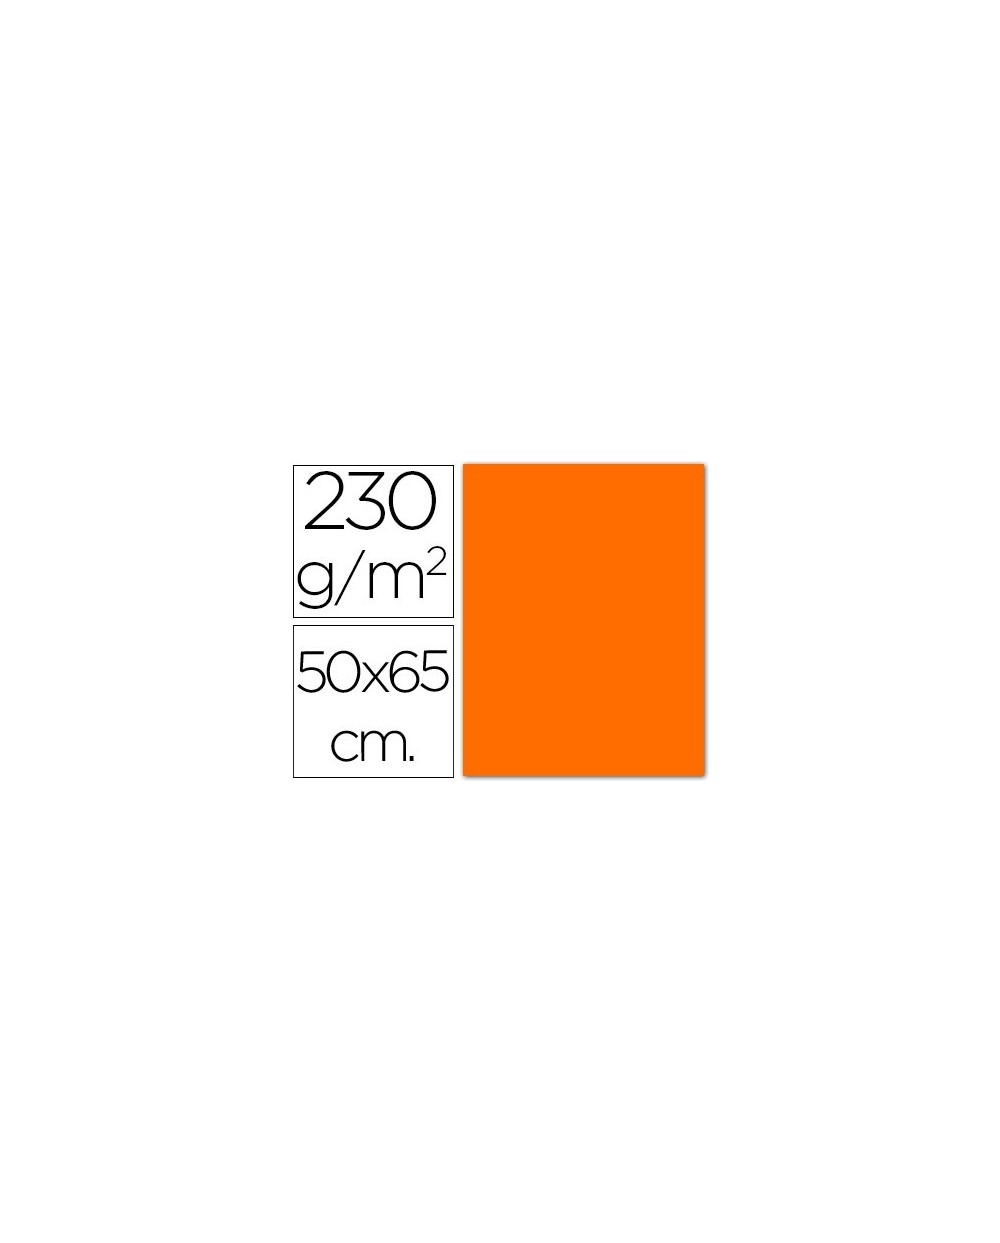 Cartulina fluorescente naranja 50x65 cm